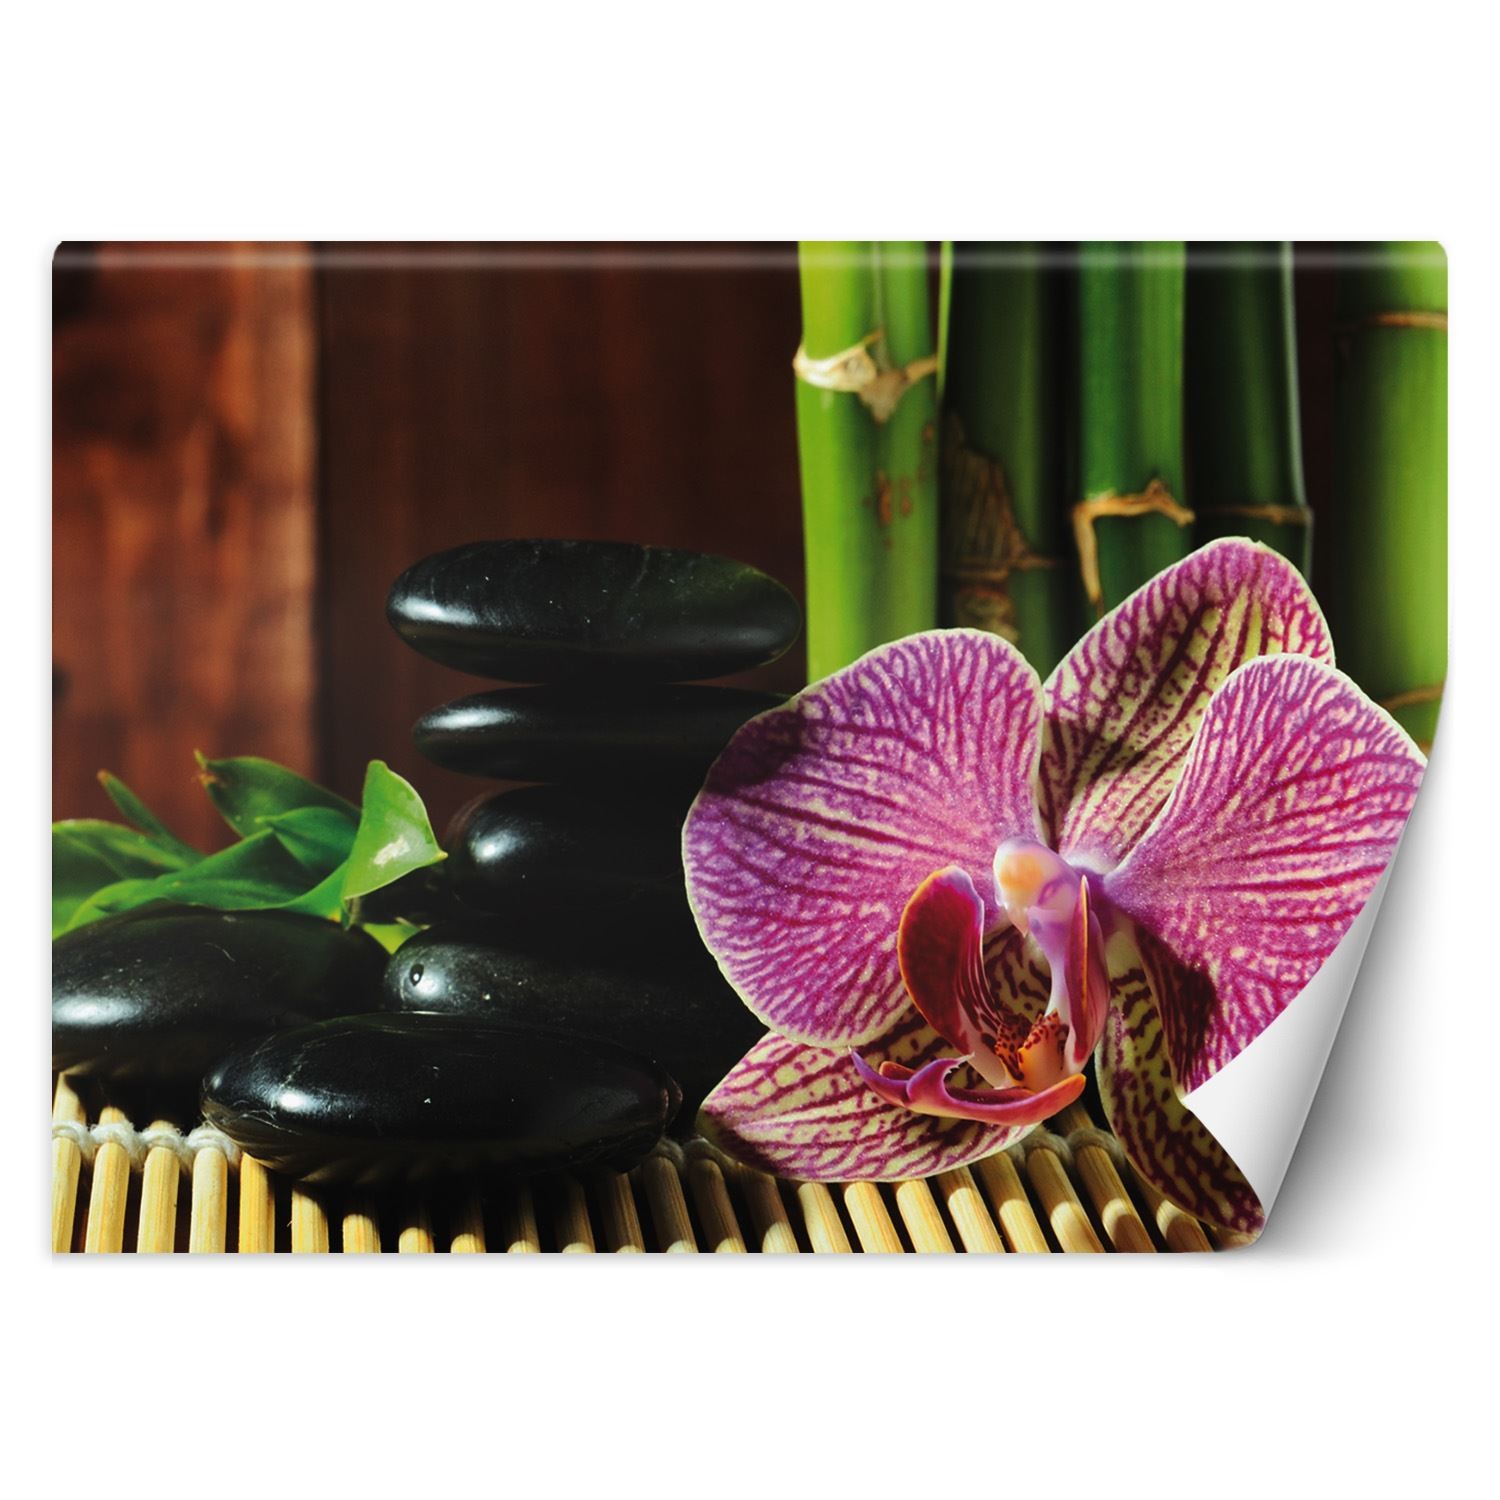 Trend24 – Behang – Orchid – Vliesbehang – Fotobehang – Behang Woonkamer – 450x315x2 cm – Incl. behanglijm